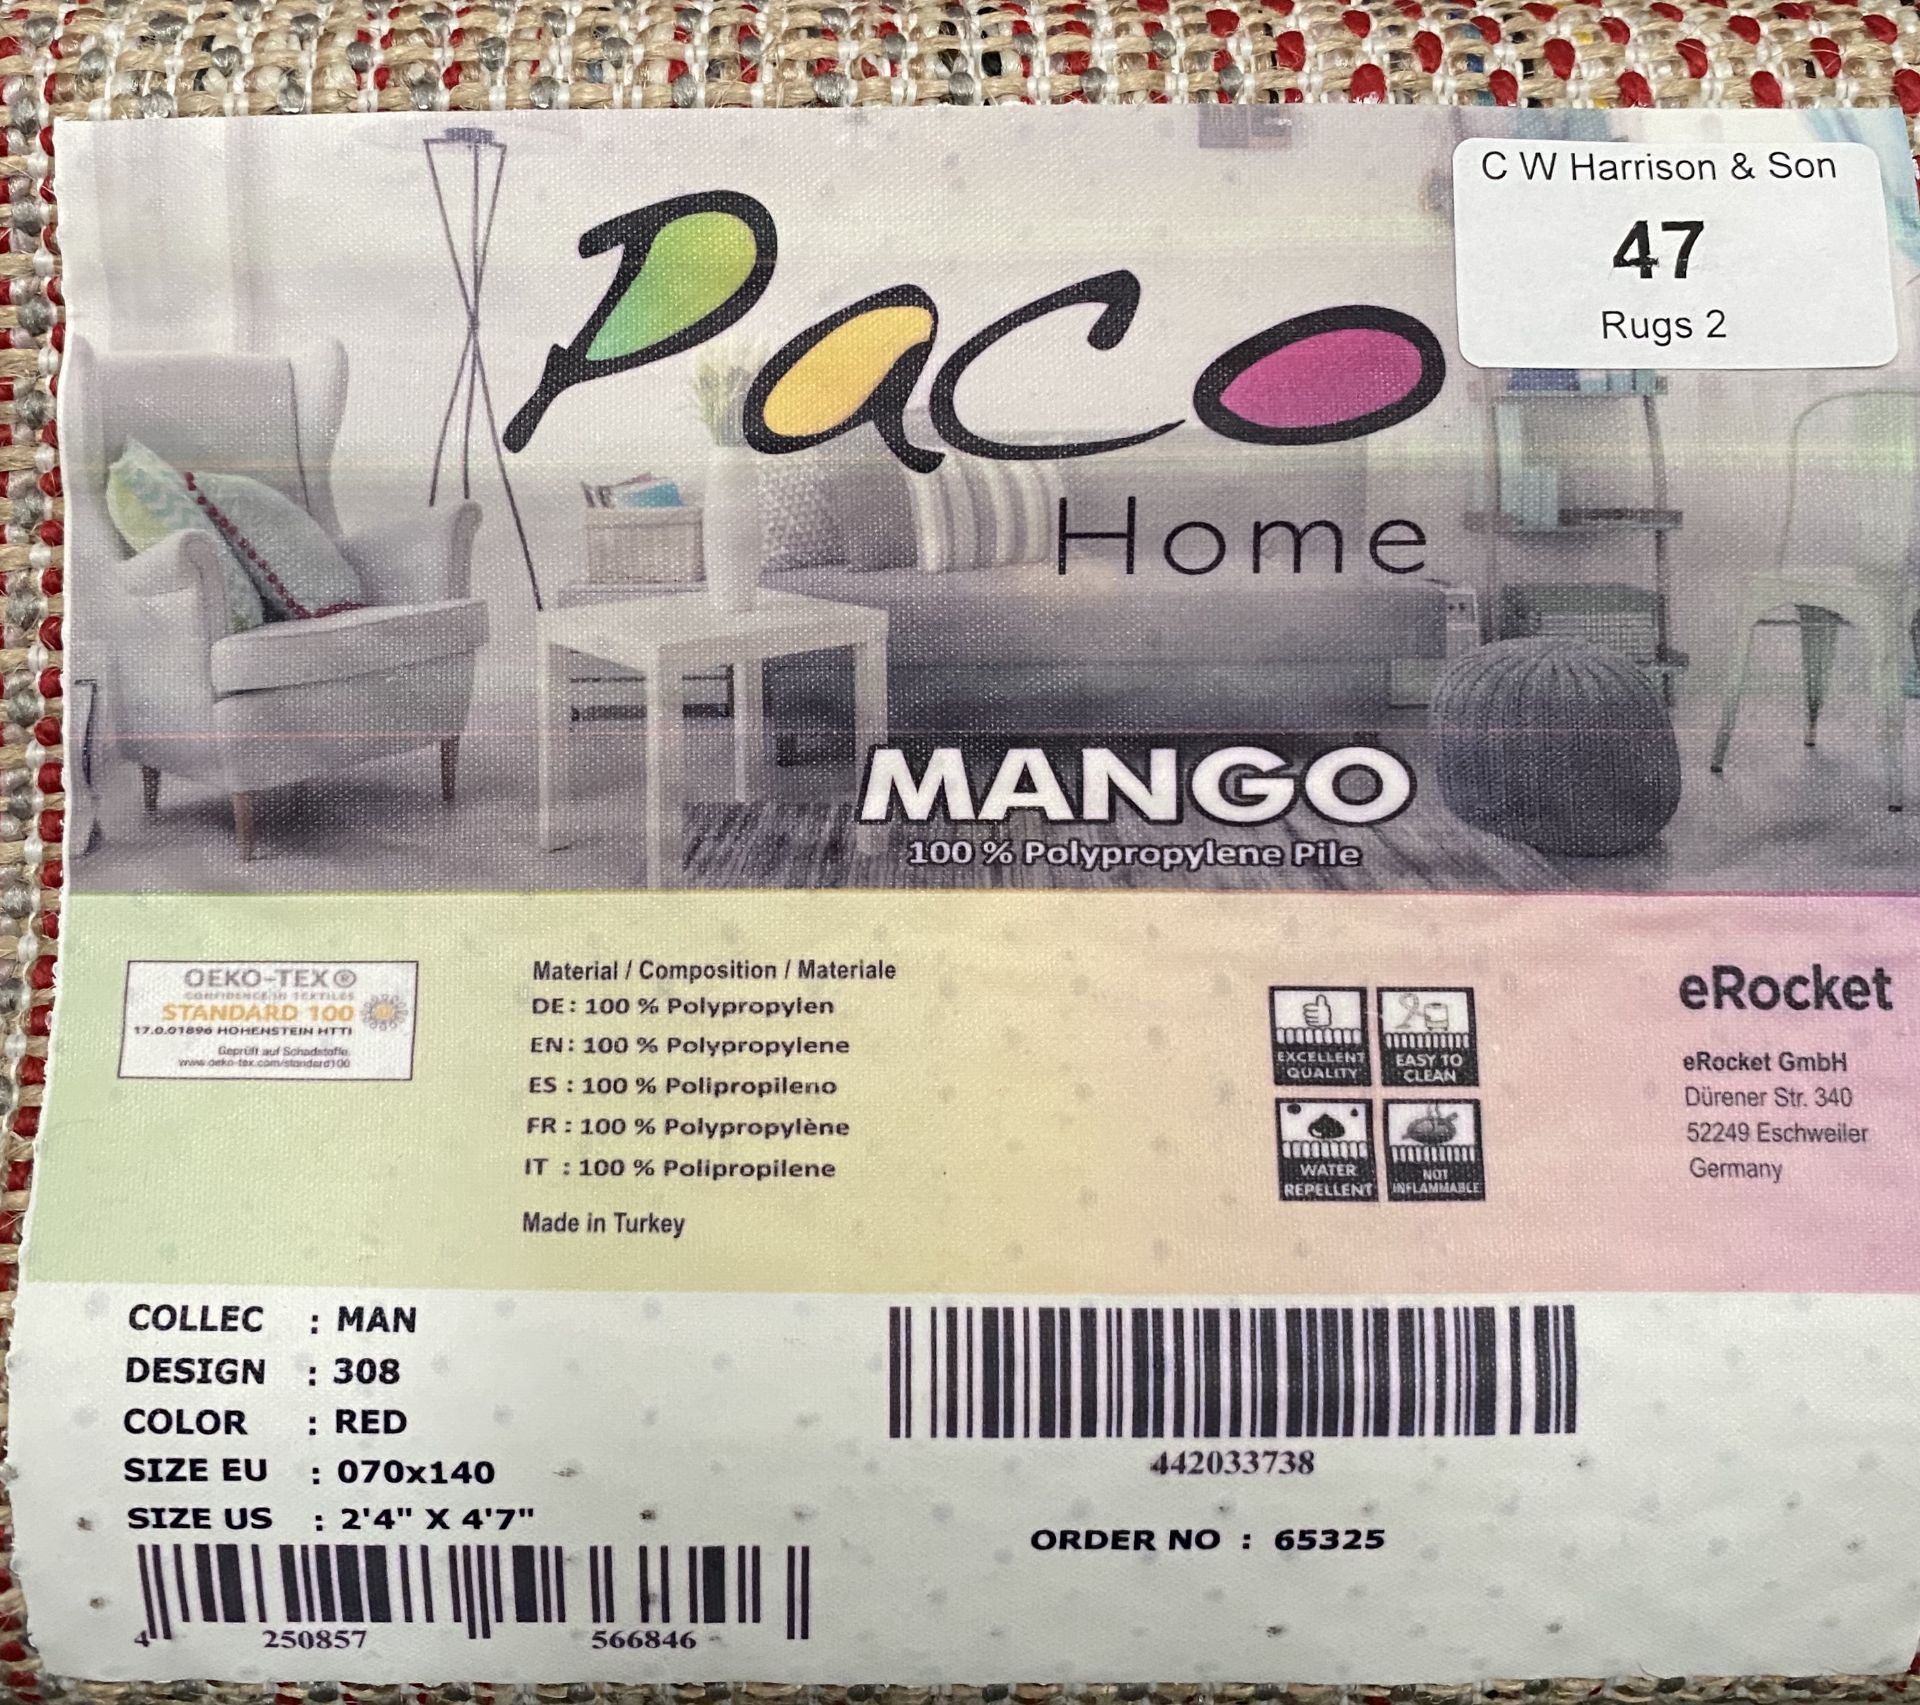 A Paco Home Mango 308 red rug - 70cm x 140cm - Image 2 of 2